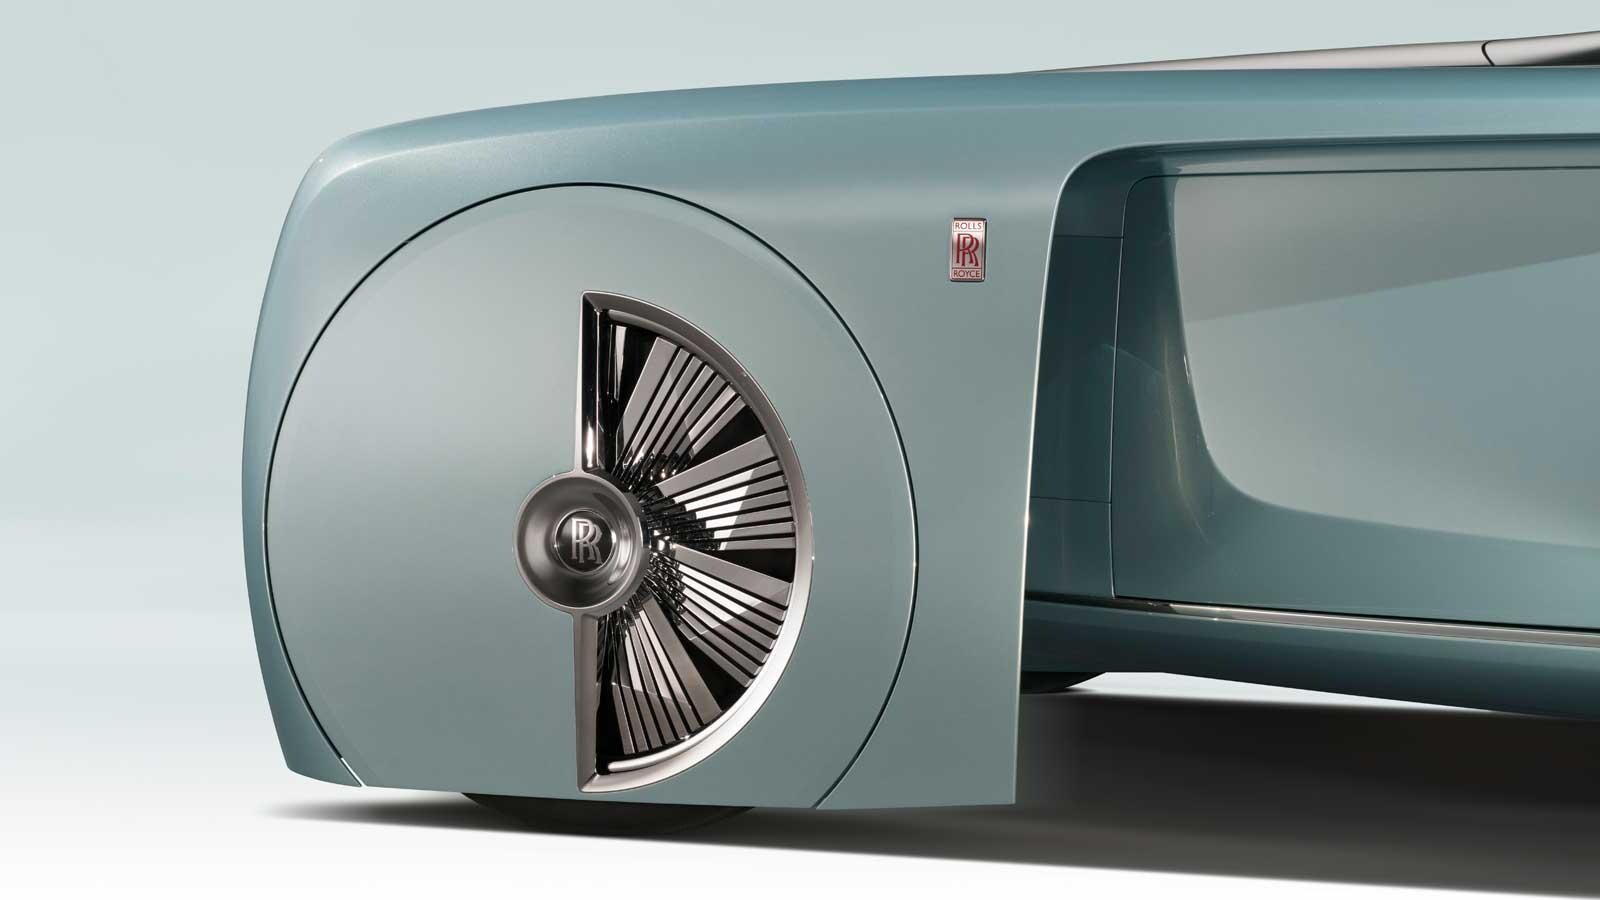 Vintage y futurista: las ruedas del Rolls NEXT 100 van semi carenadas